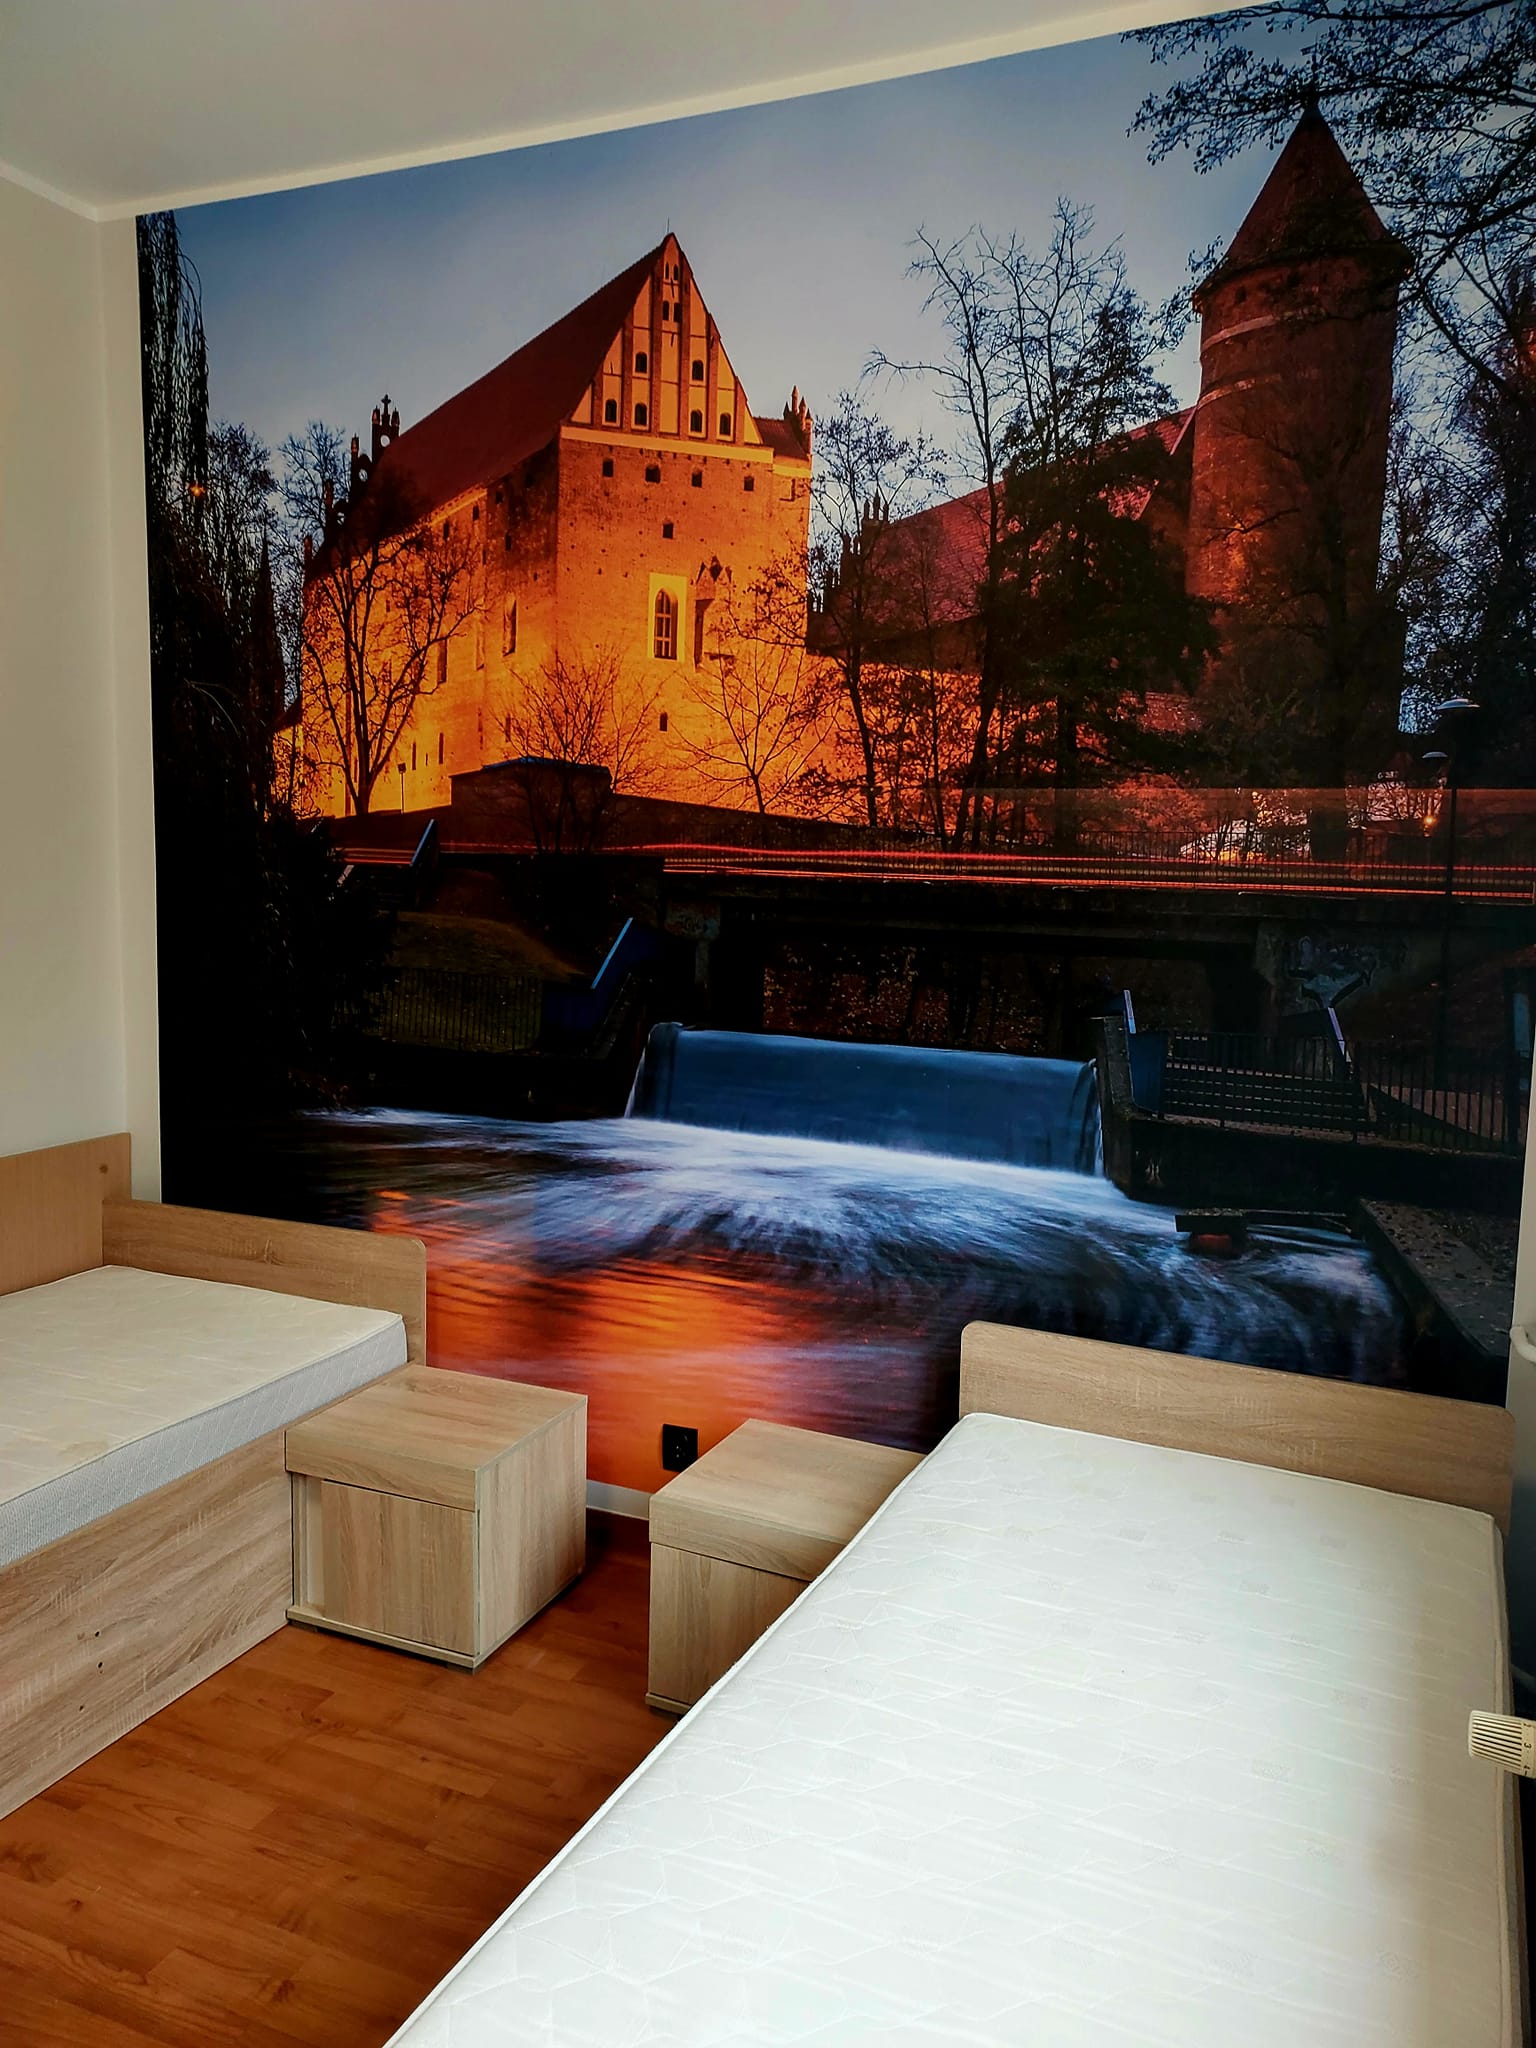 New wallpaper in the Hostel on Kosciuszko Street showing an image of the Olsztyn castle.